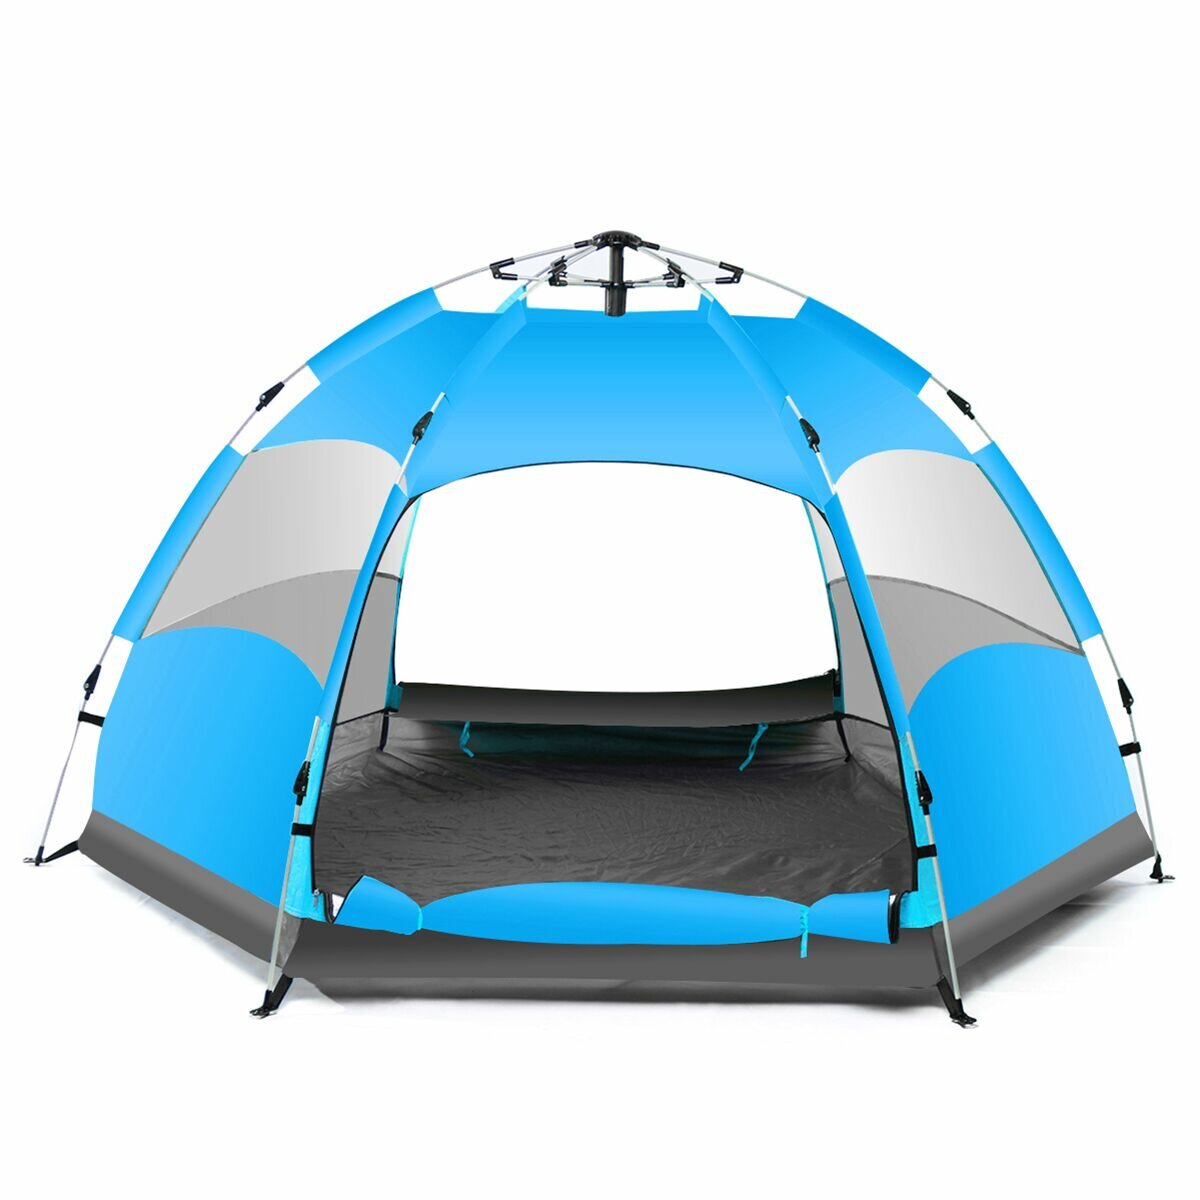 IPRee® 5-7 persone Automatico Impermeabile Grande campeggio Tenda da escursionismo Campo base all'aperto Blu / Arancione